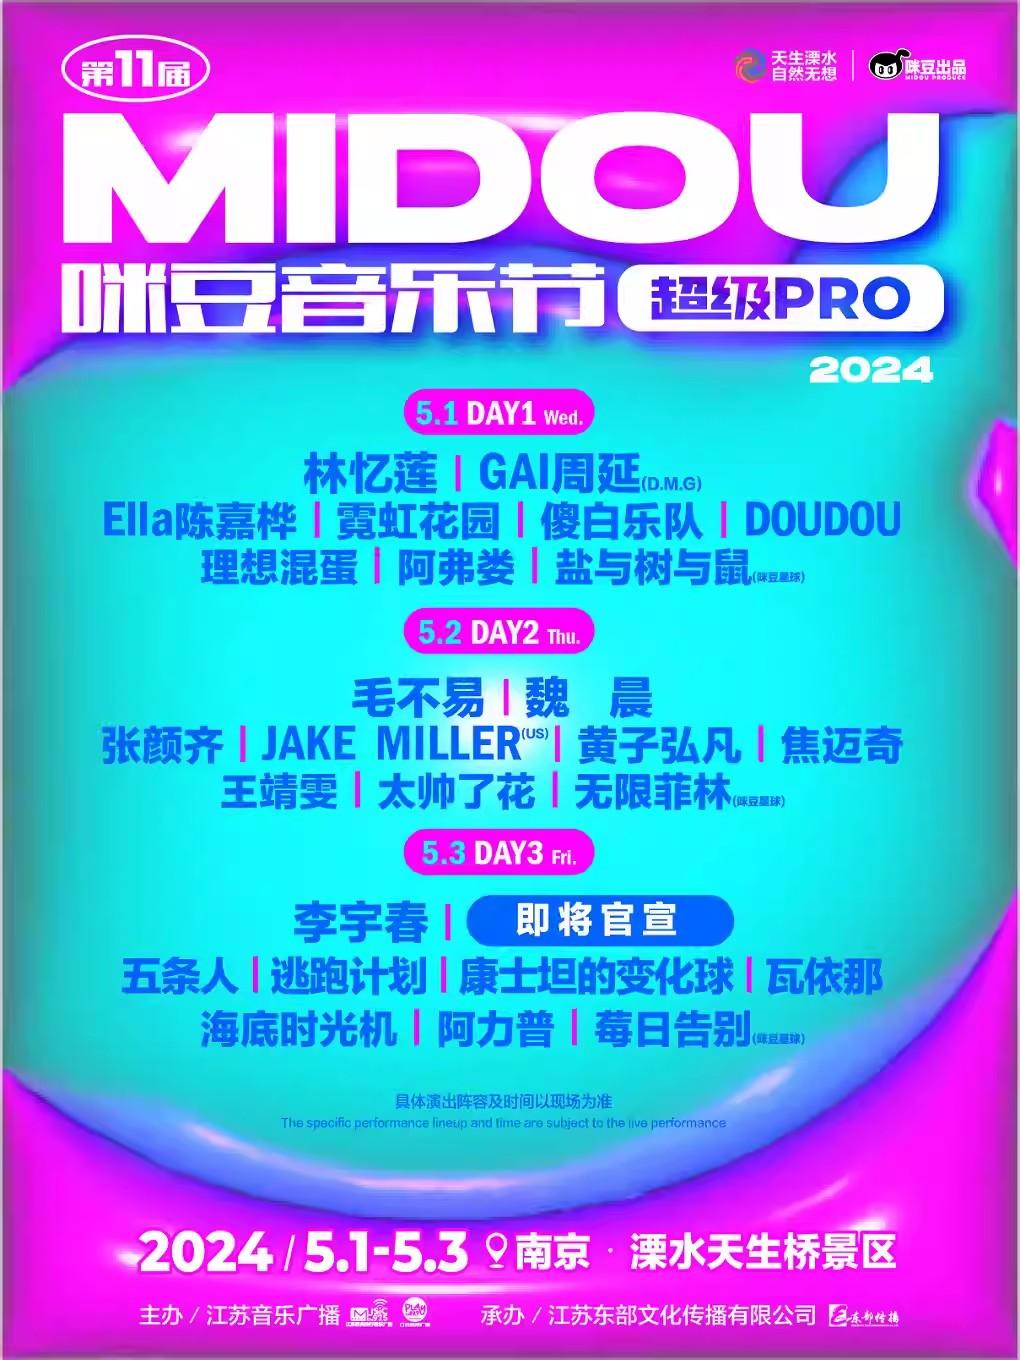 第十一届咪豆音乐节·超级PRO